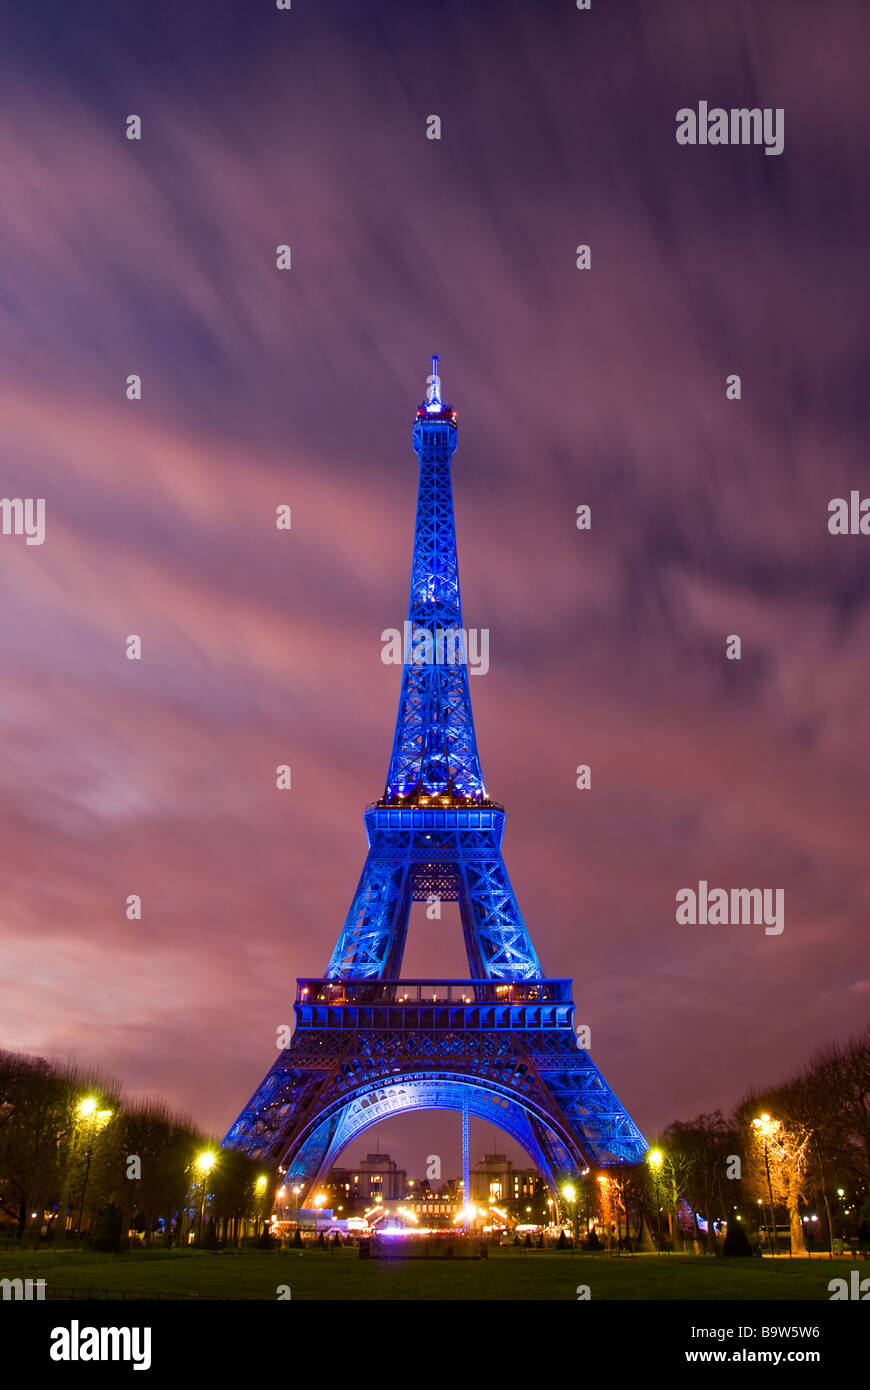 Vue sur la Tour Eiffel illuminée en bleu affichant le symbole européen en raison de la présidence française de l'Union européenne Banque D'Images